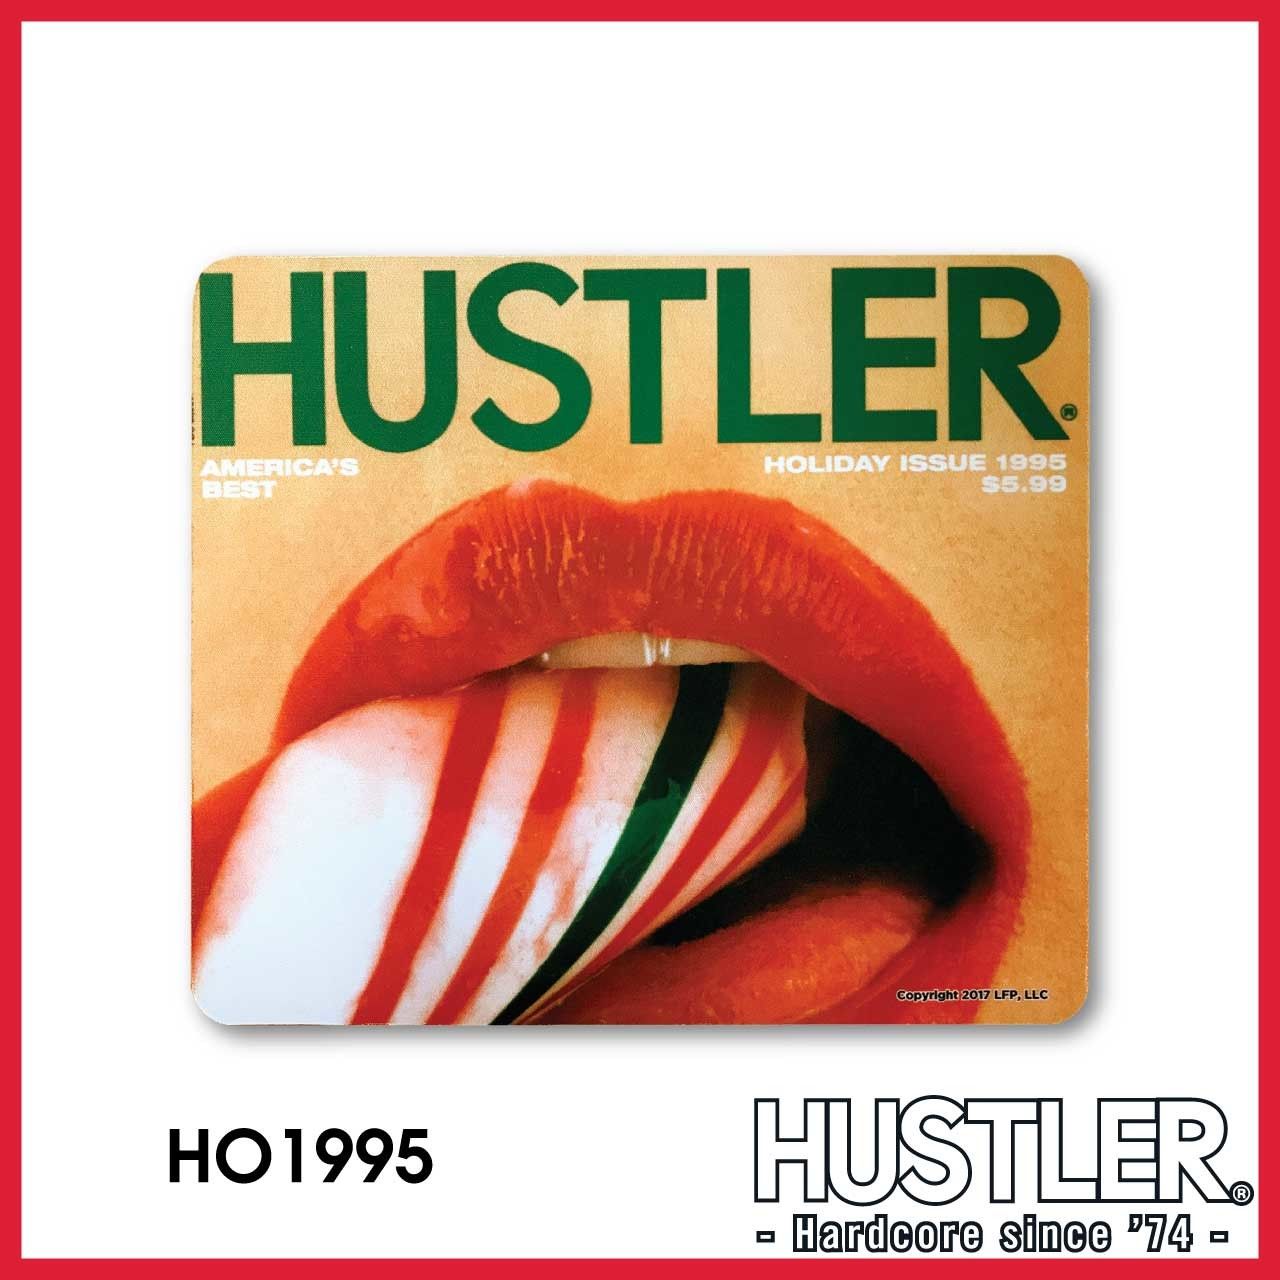 Hustler 2004 holiday issue